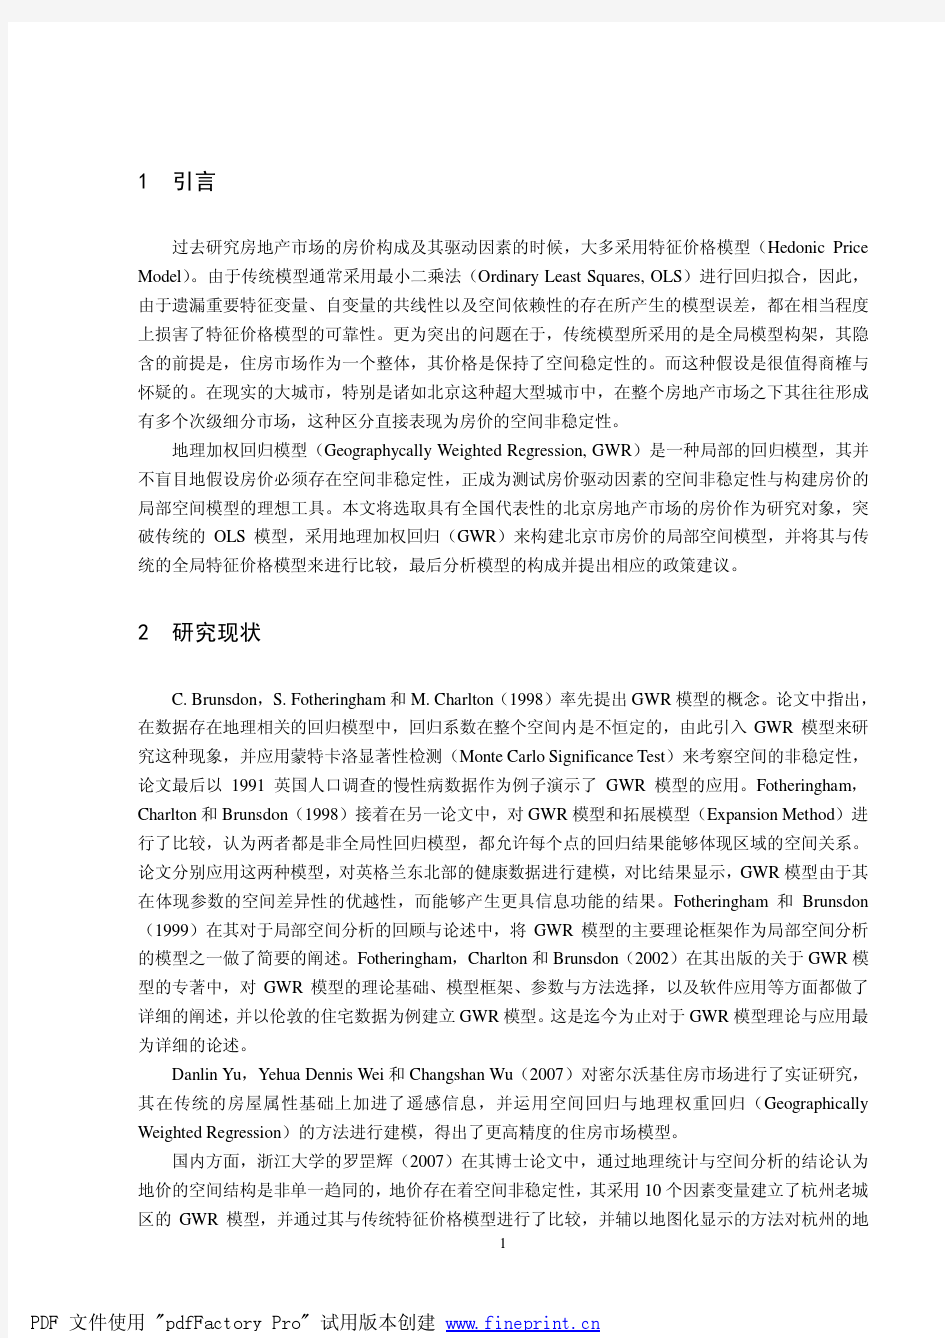 ID428-北京市房价的空间分析与GWR模型构建_徐聪_中国人民大学